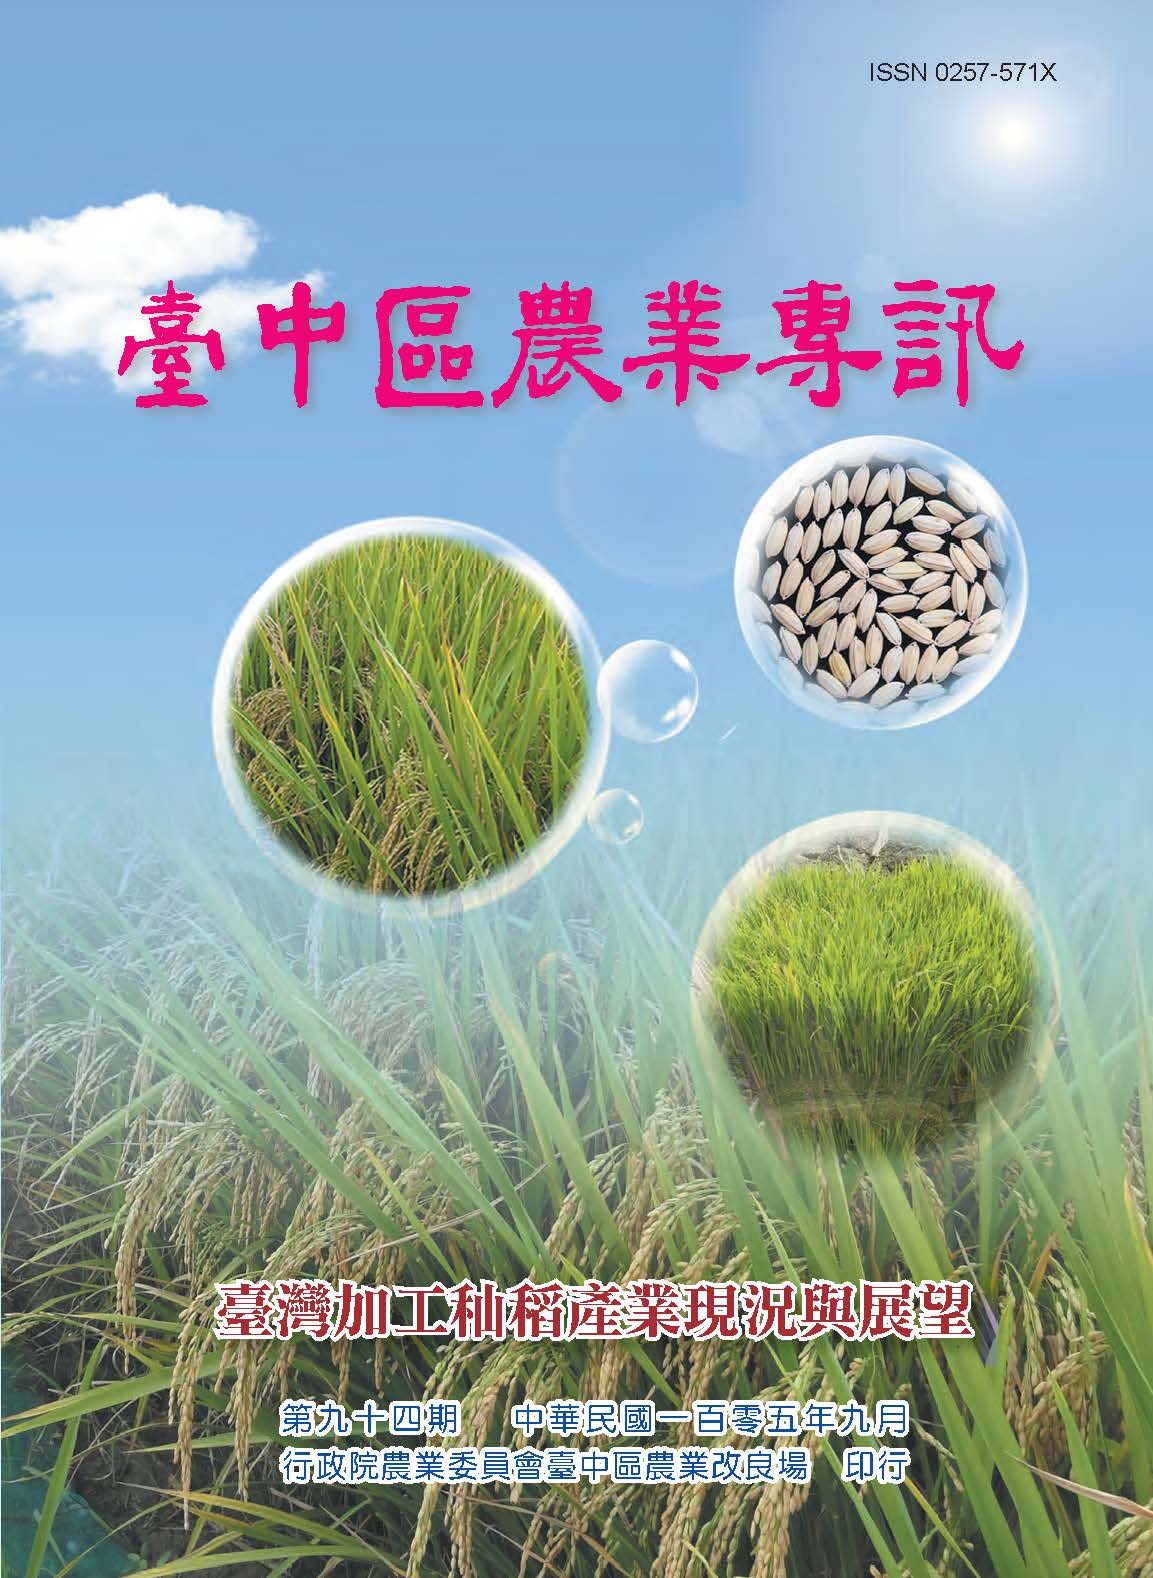 台中區農業專訊第 94 期-臺灣加工秈稻產業現況與展望